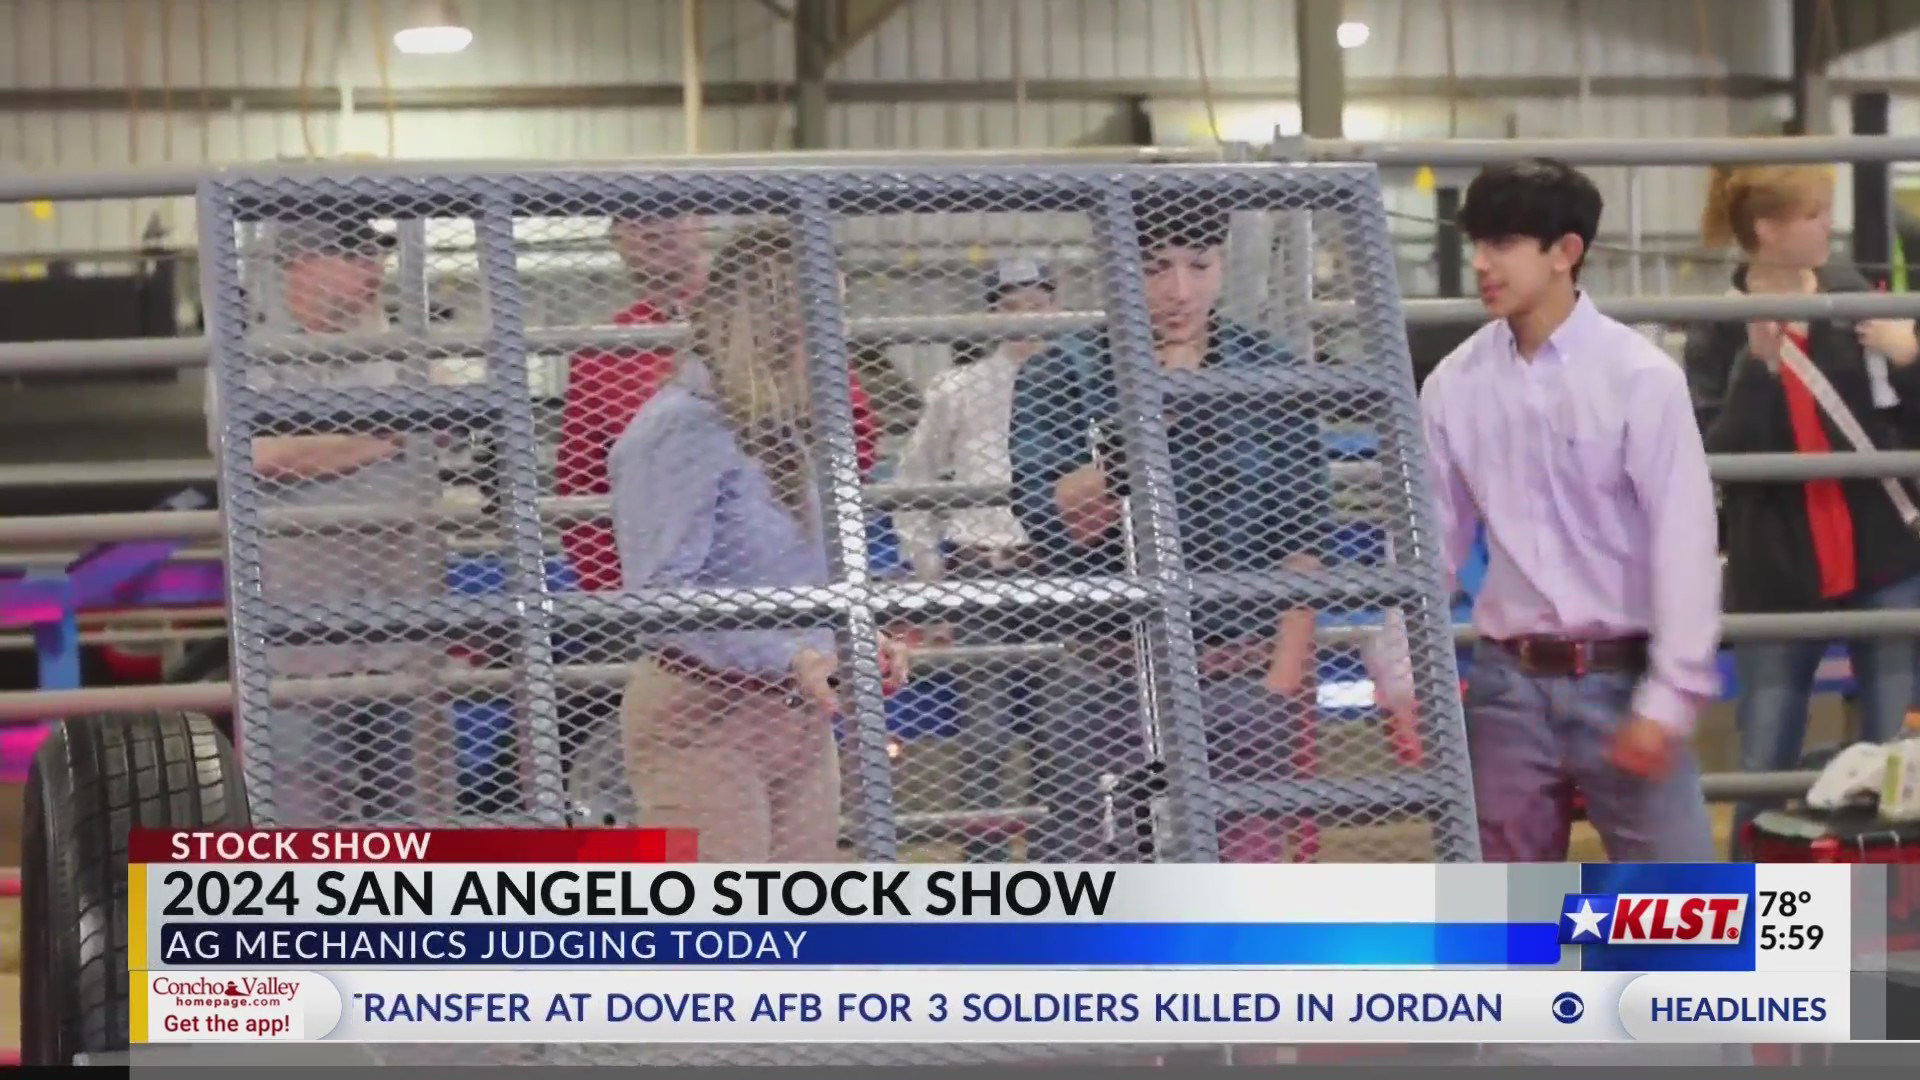 2024 San Angelo Stock Show kicks off with Ag Mechanics